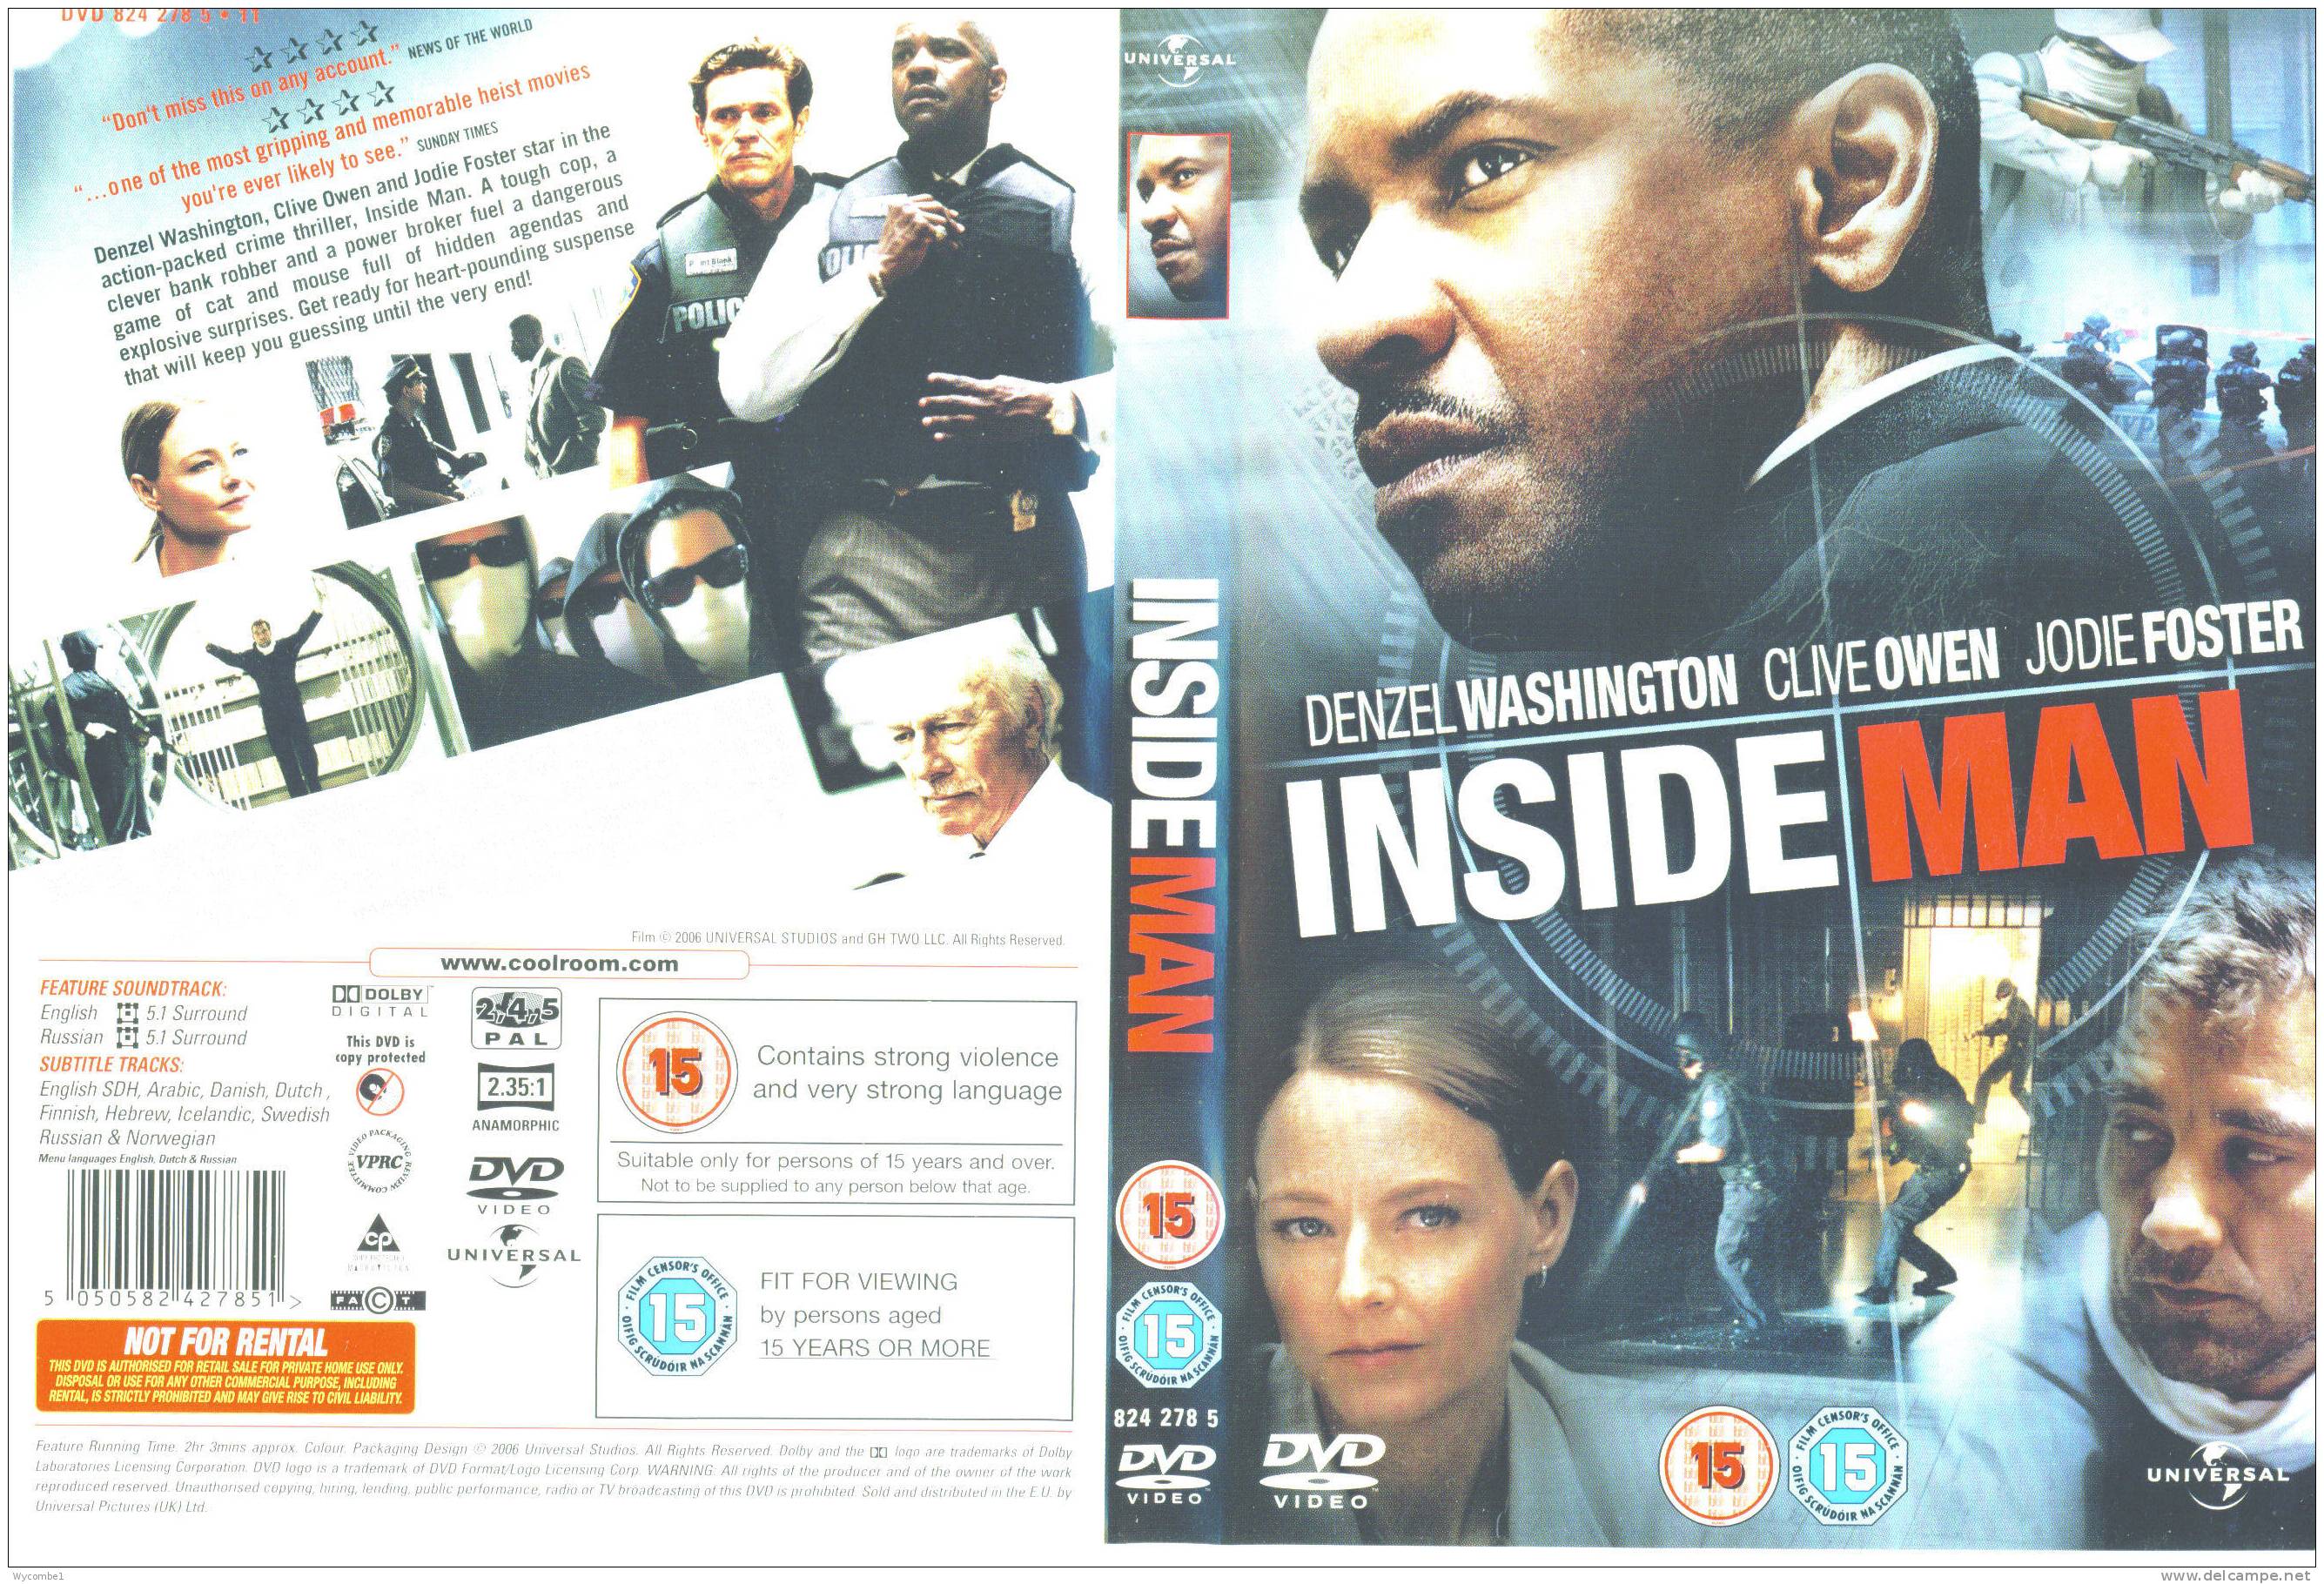 INSIDE MAN - Denzel Washington (Details As Scan) - Policíacos